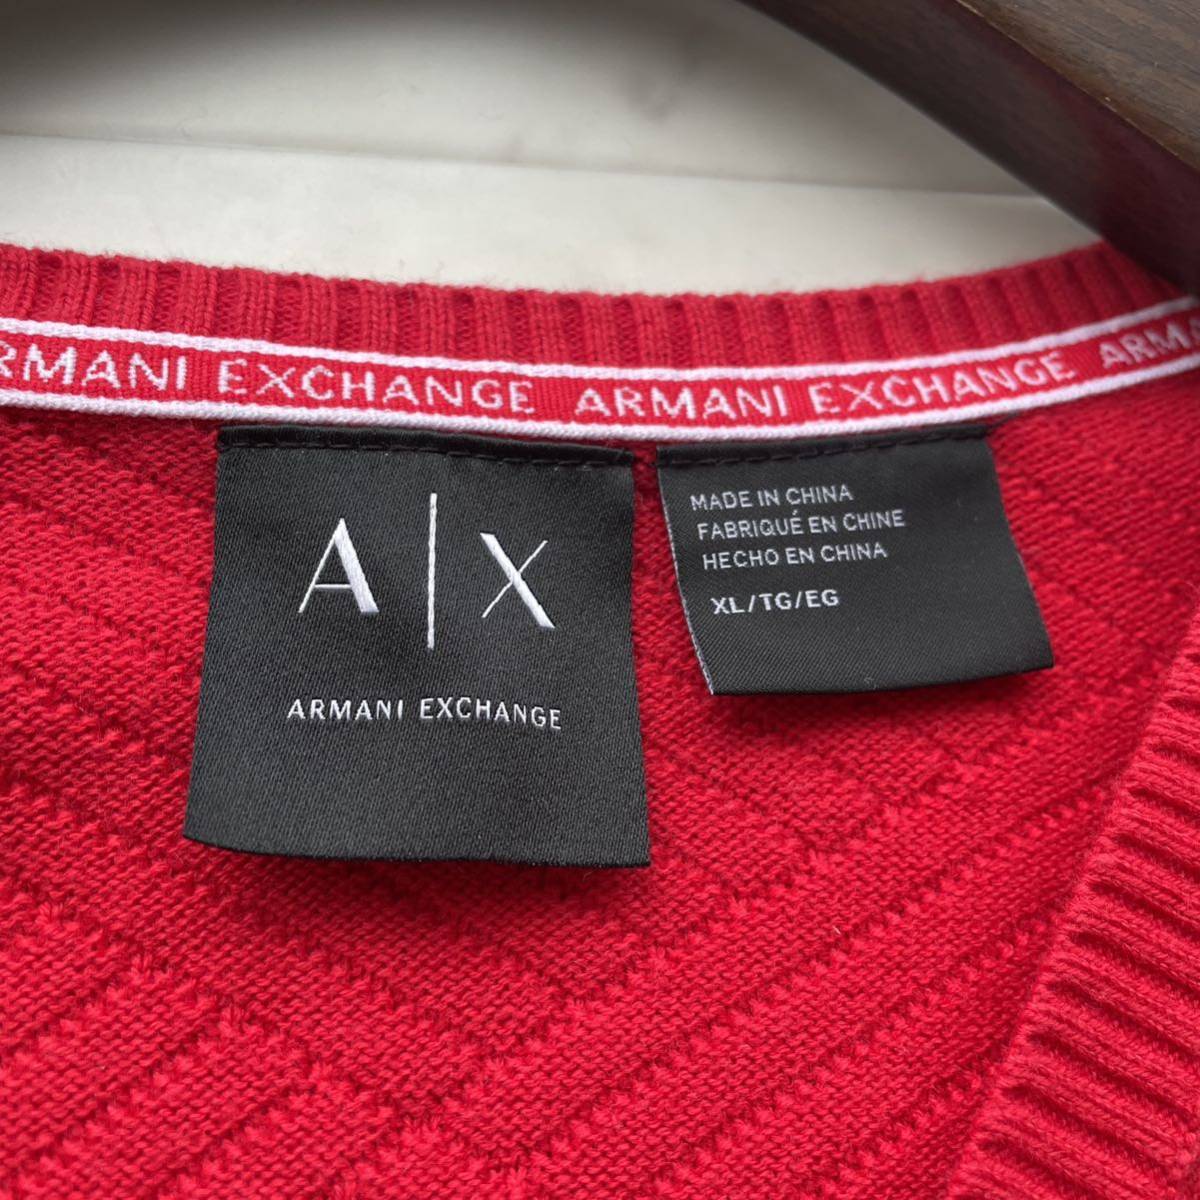  превосходный товар #XL#ARMANI EXCHANGE Armani Exchange большой размер хлопок вязаный тонкий красный красный вмятина выпуклость V шея весна предмет мужской 